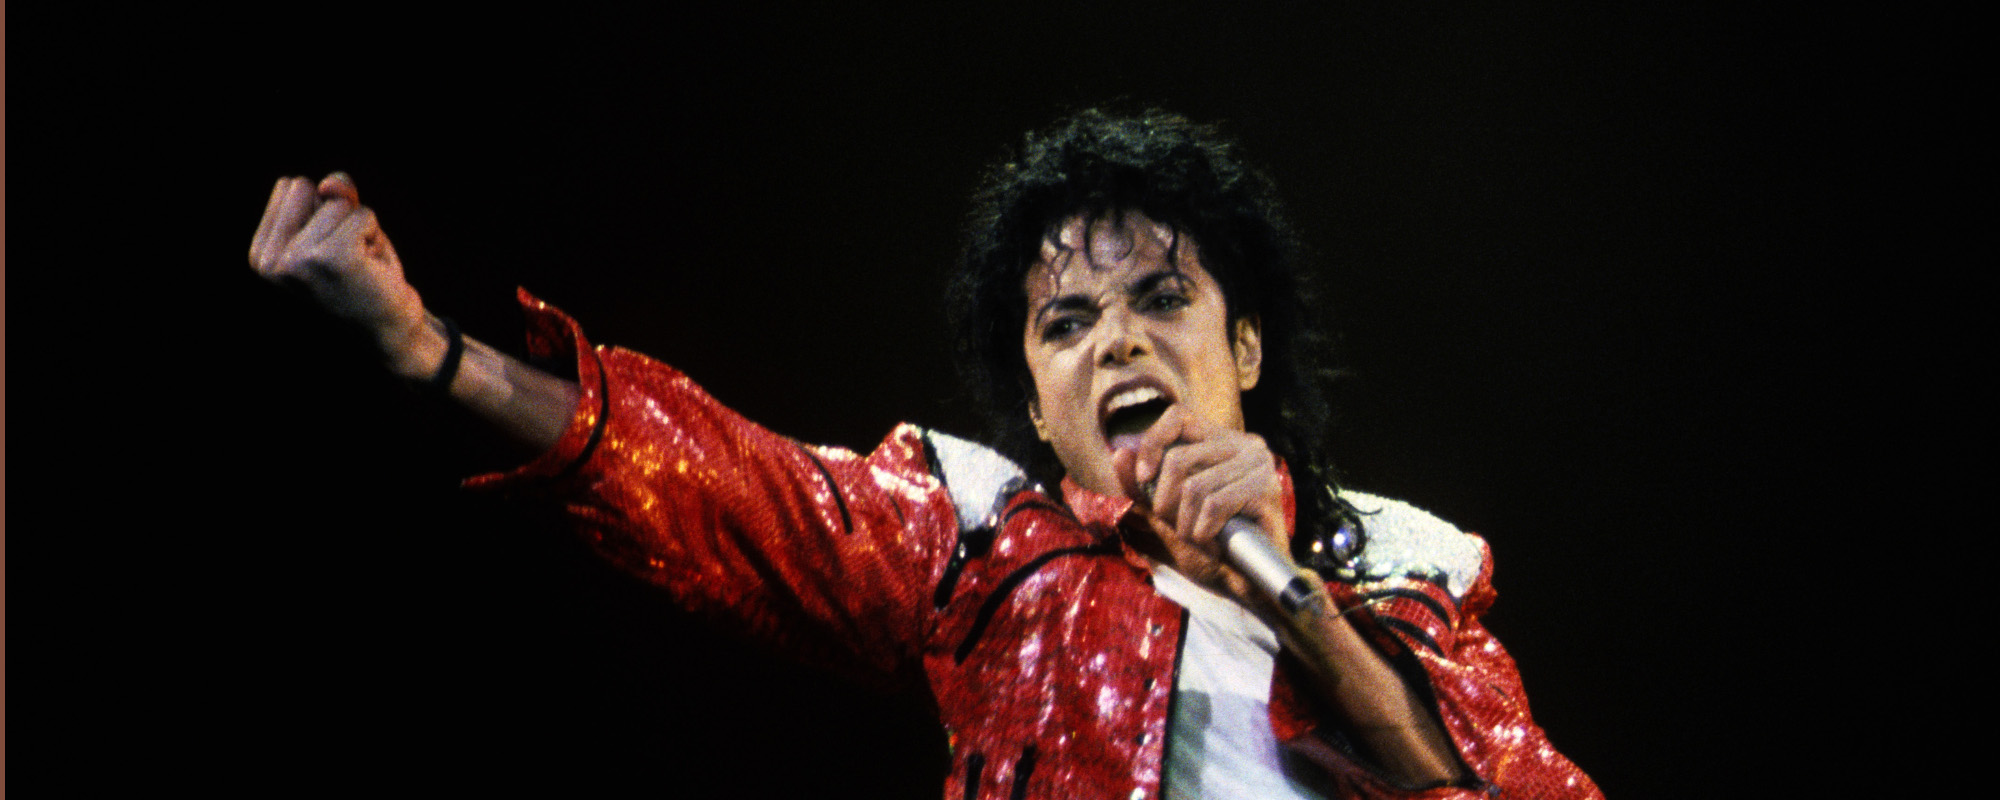 Le rappeur Memphis Bleek raconte une histoire bizarre à propos de Michael Jackson